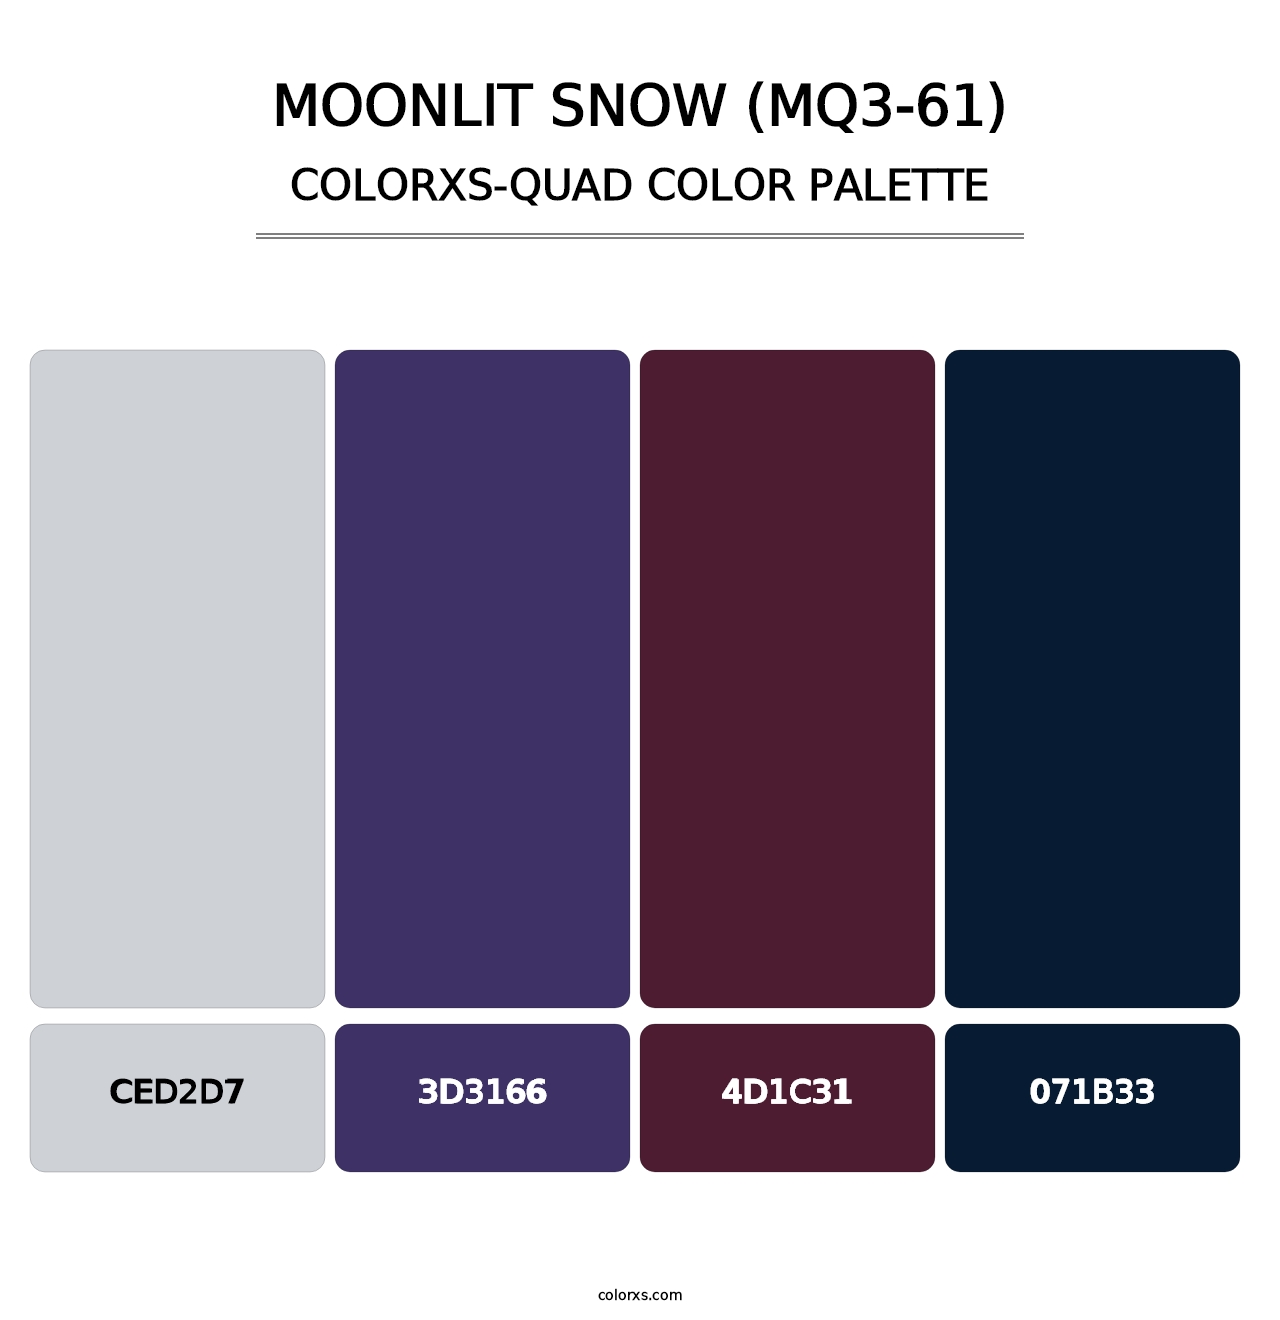 Moonlit Snow (MQ3-61) - Colorxs Quad Palette